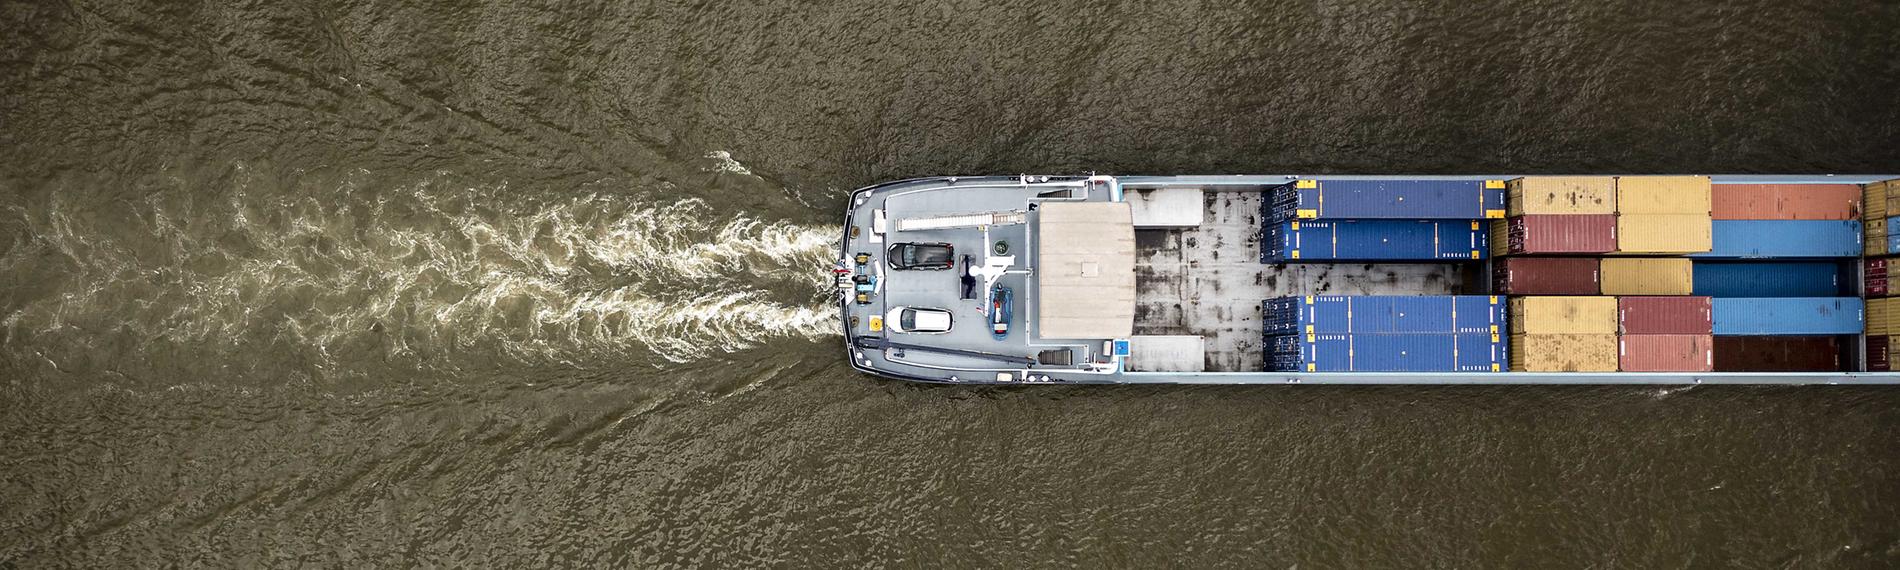 18.08.2022, Rhein bei Lobith, Niederlande: Ein Binnenschiff fährt durch den Rhein (aufgenommen aus der Vogelperspektive)